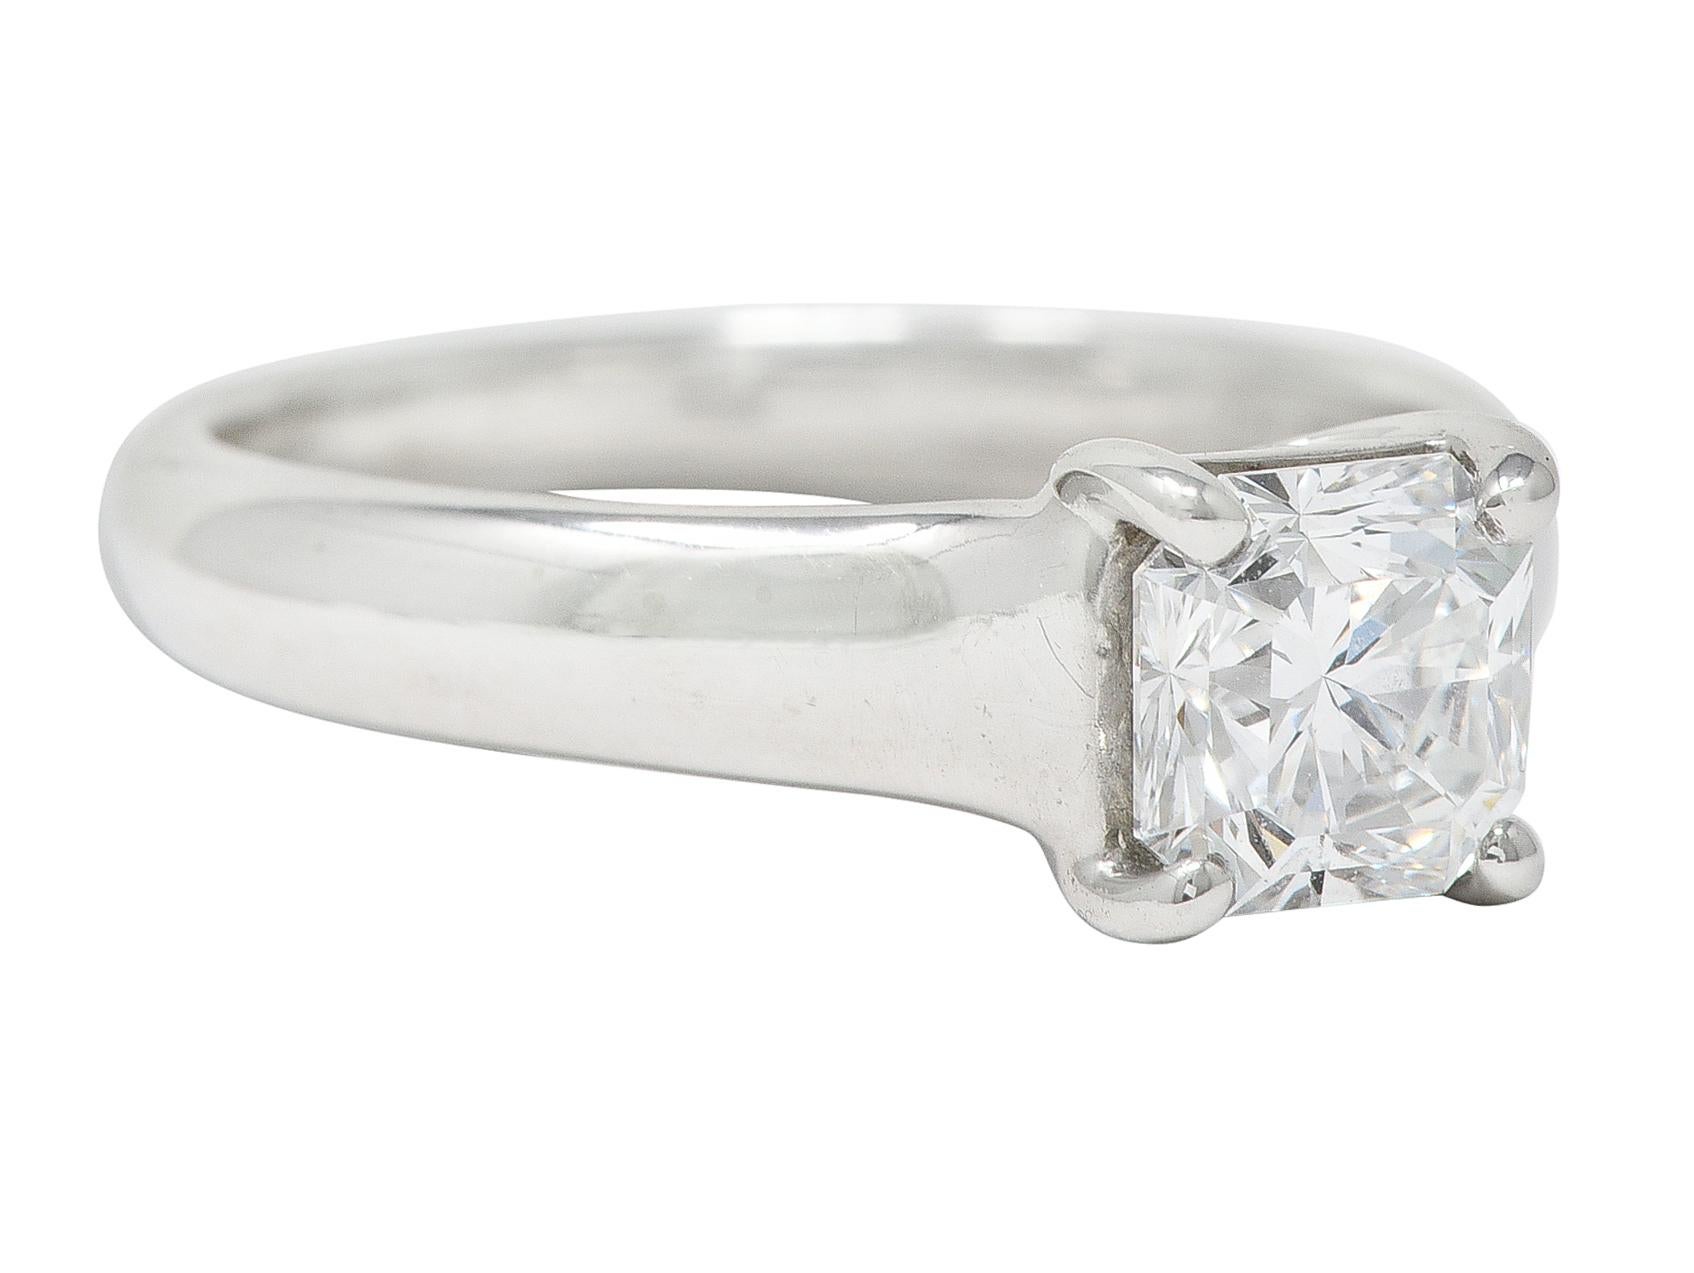 La bague de fiançailles est ornée d'un diamant de taille Lucida pesant 1,12 carats au total - couleur D et pureté VVS1. Avec une inscription 